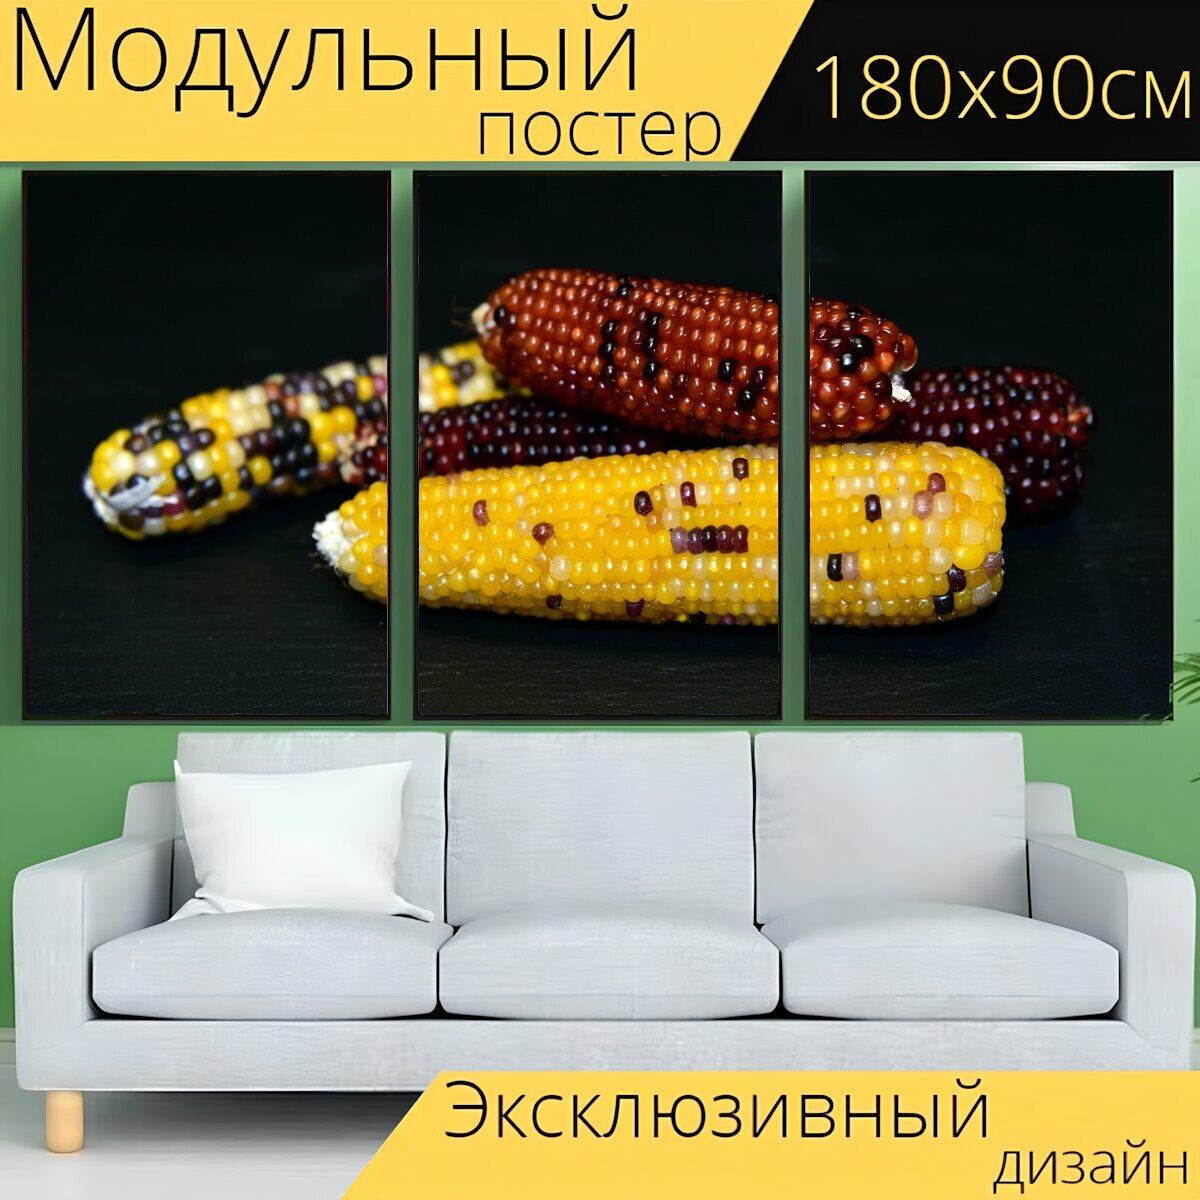 Модульный постер "Кукуруза, декоративная кукуруза, украшение" 180 x 90 см. для интерьера